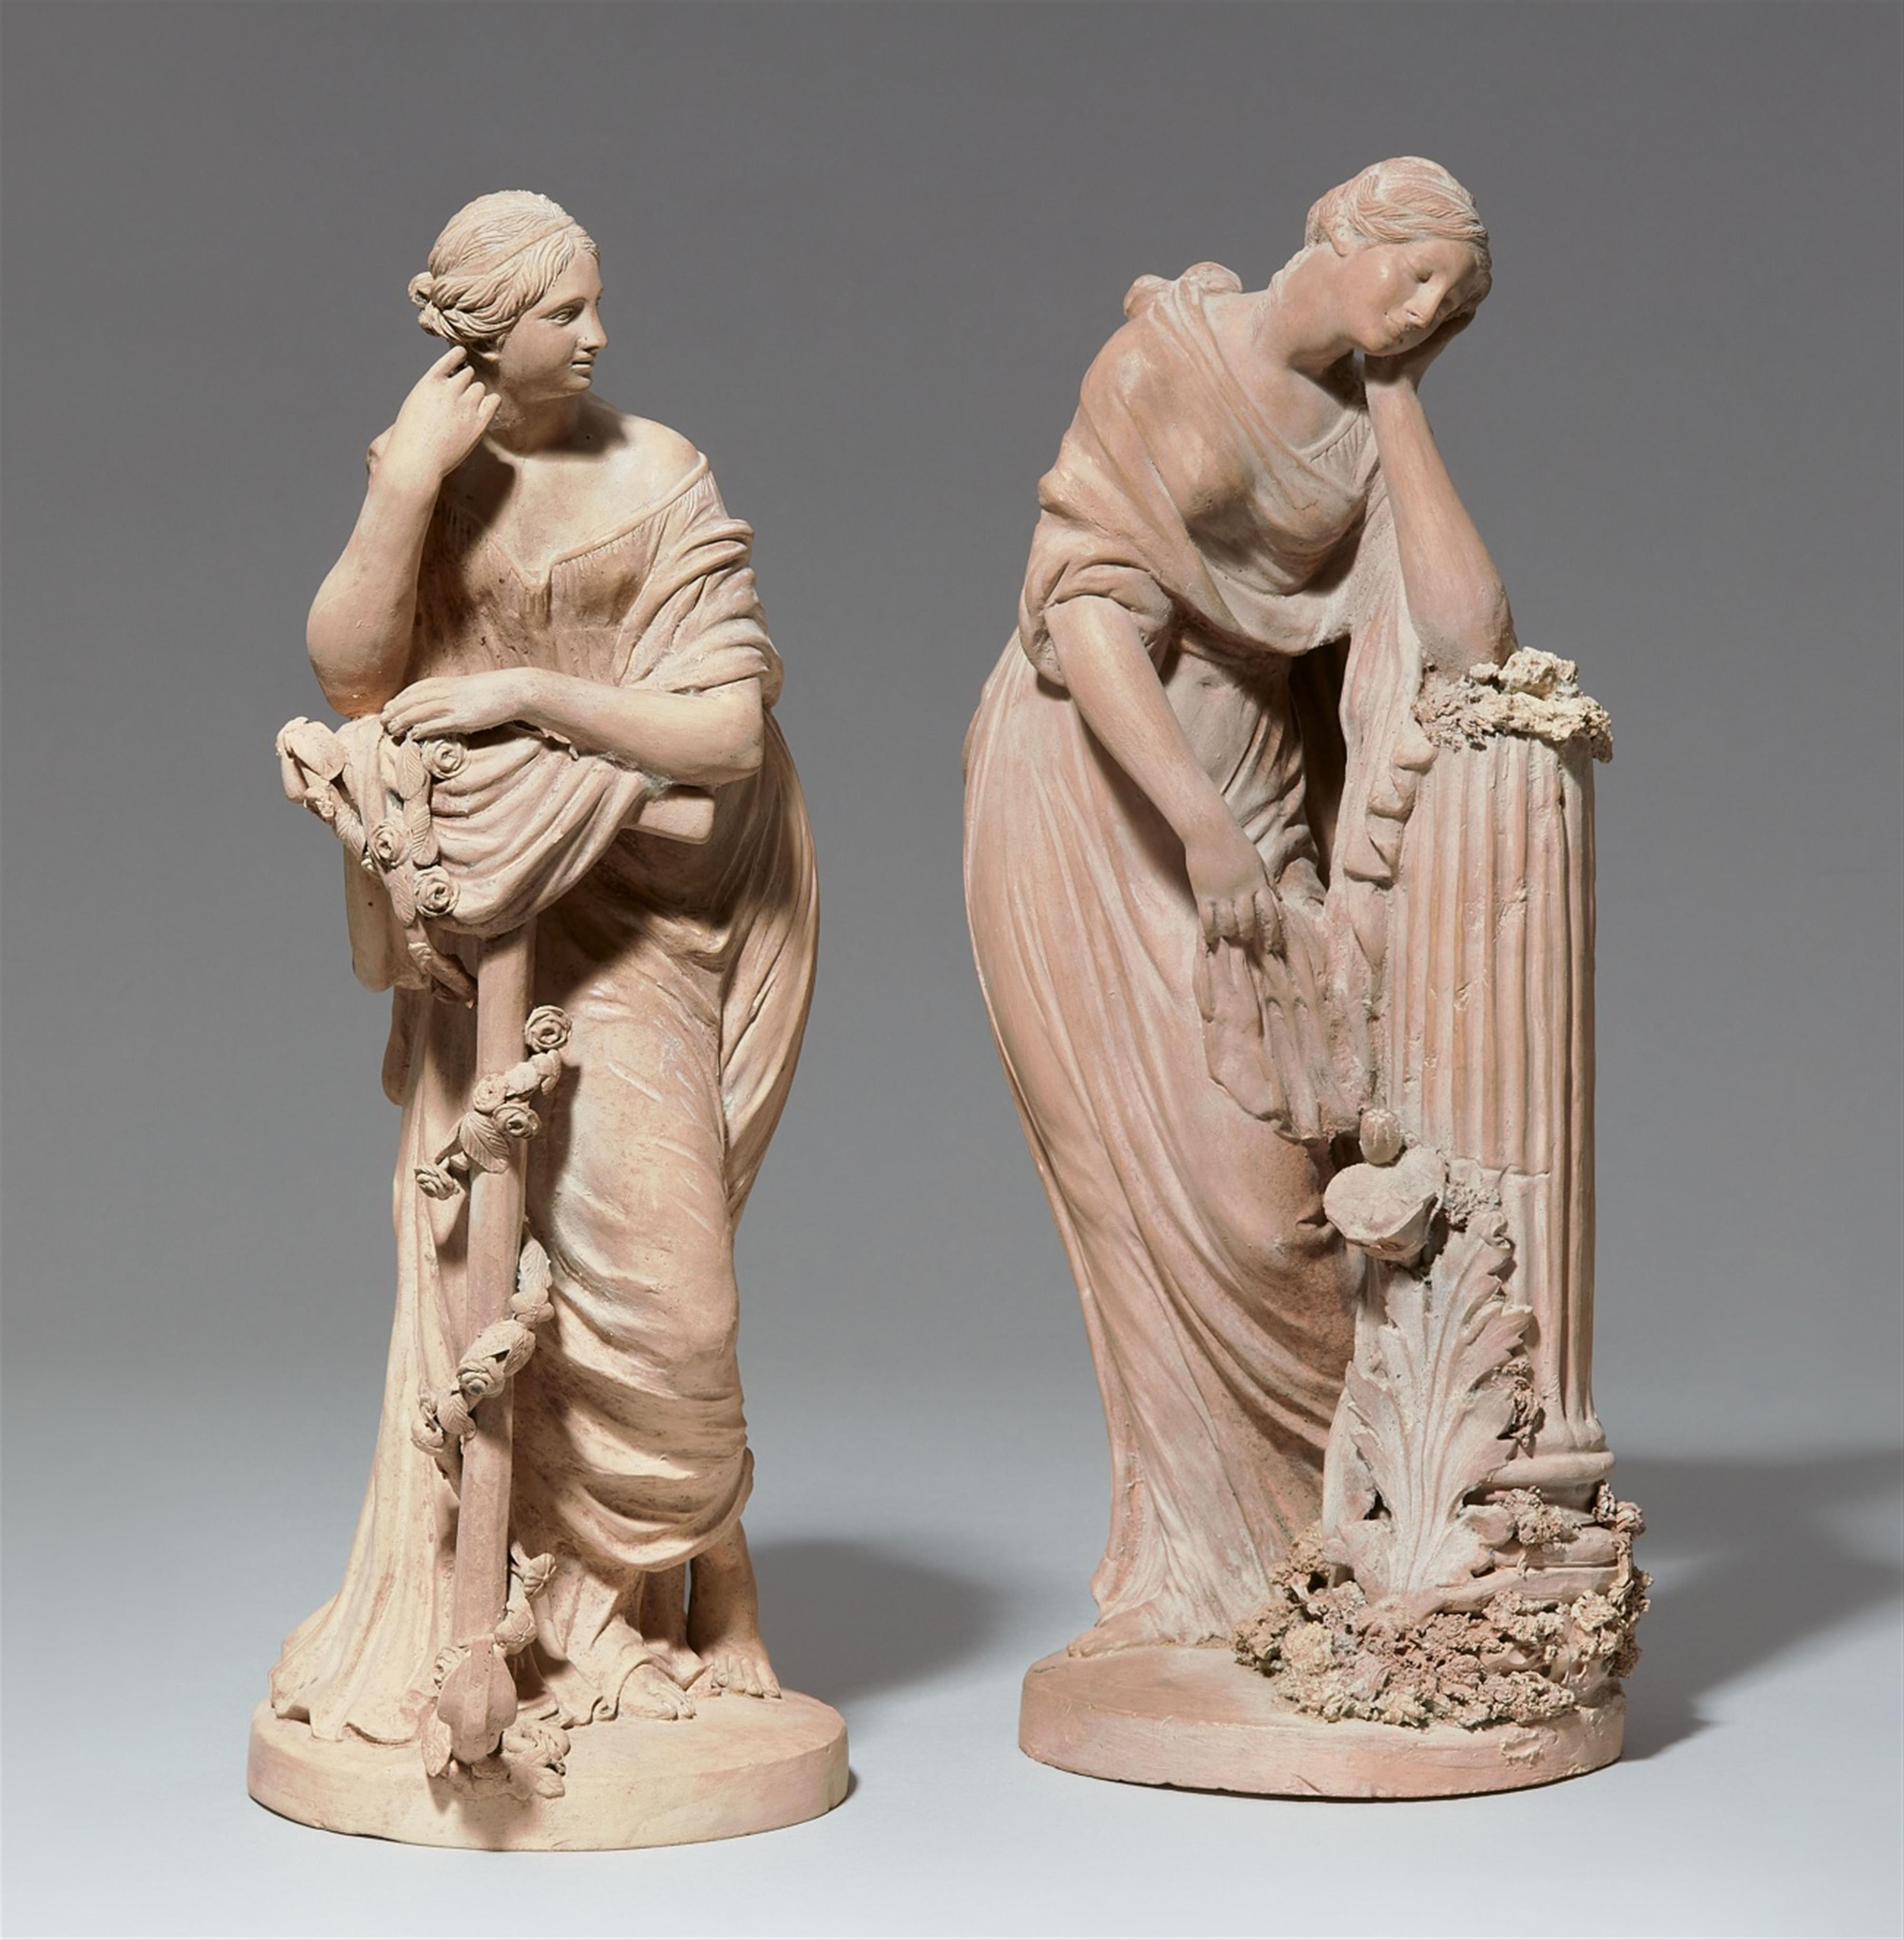 Zwei allegorische Figuren
'Le Sommeil' und 'L'Espérance' - image-1